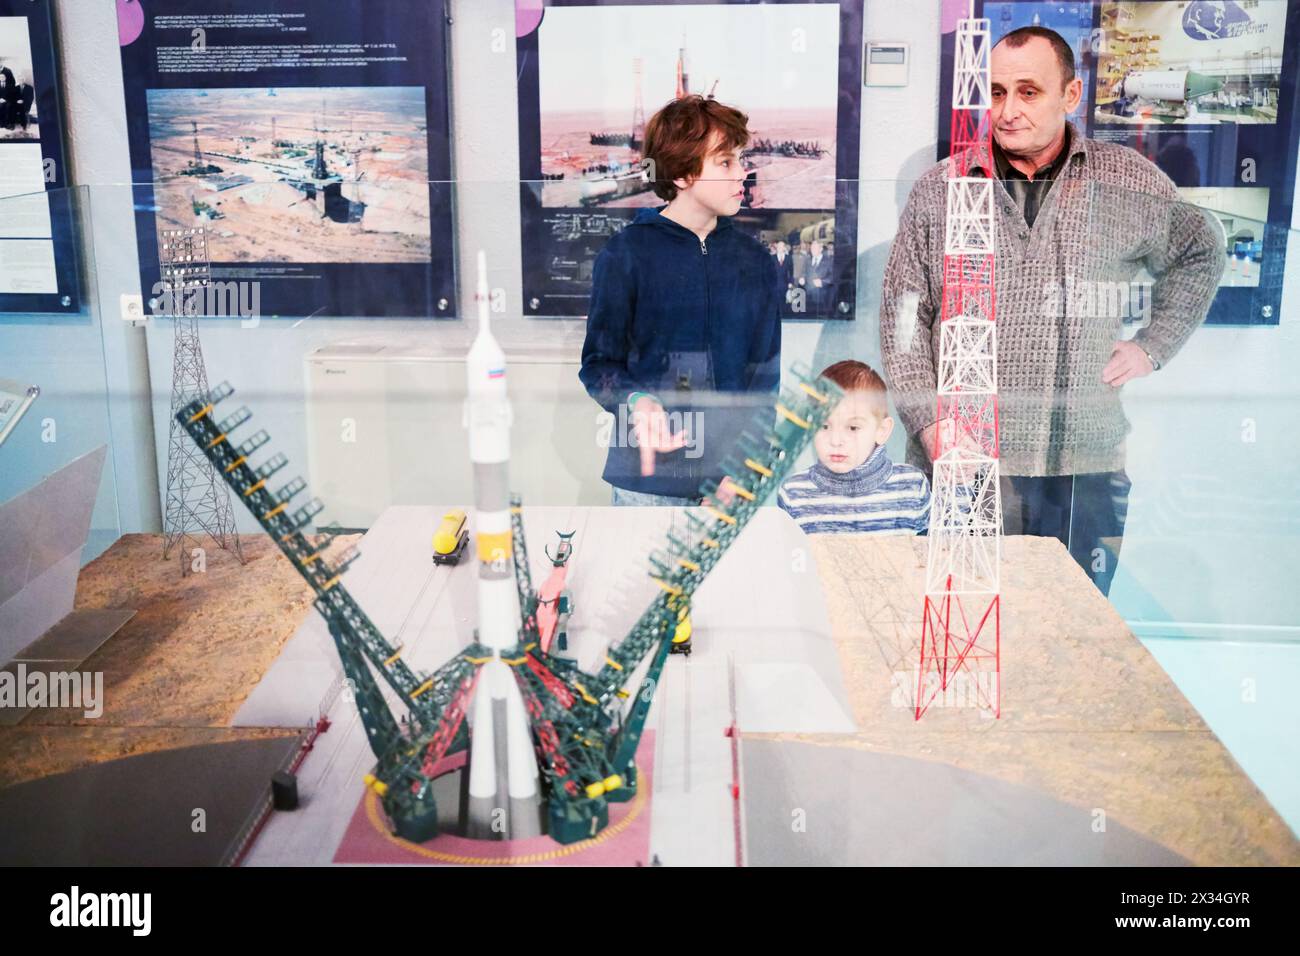 MOSCOU, RUSSIE - 7 janvier 2015 : Grand-père et deux enfants (avec autorisations du modèle) regardent le modèle du complexe de lancement du cosmodrome de Baïkonour avec le porte-avions Banque D'Images